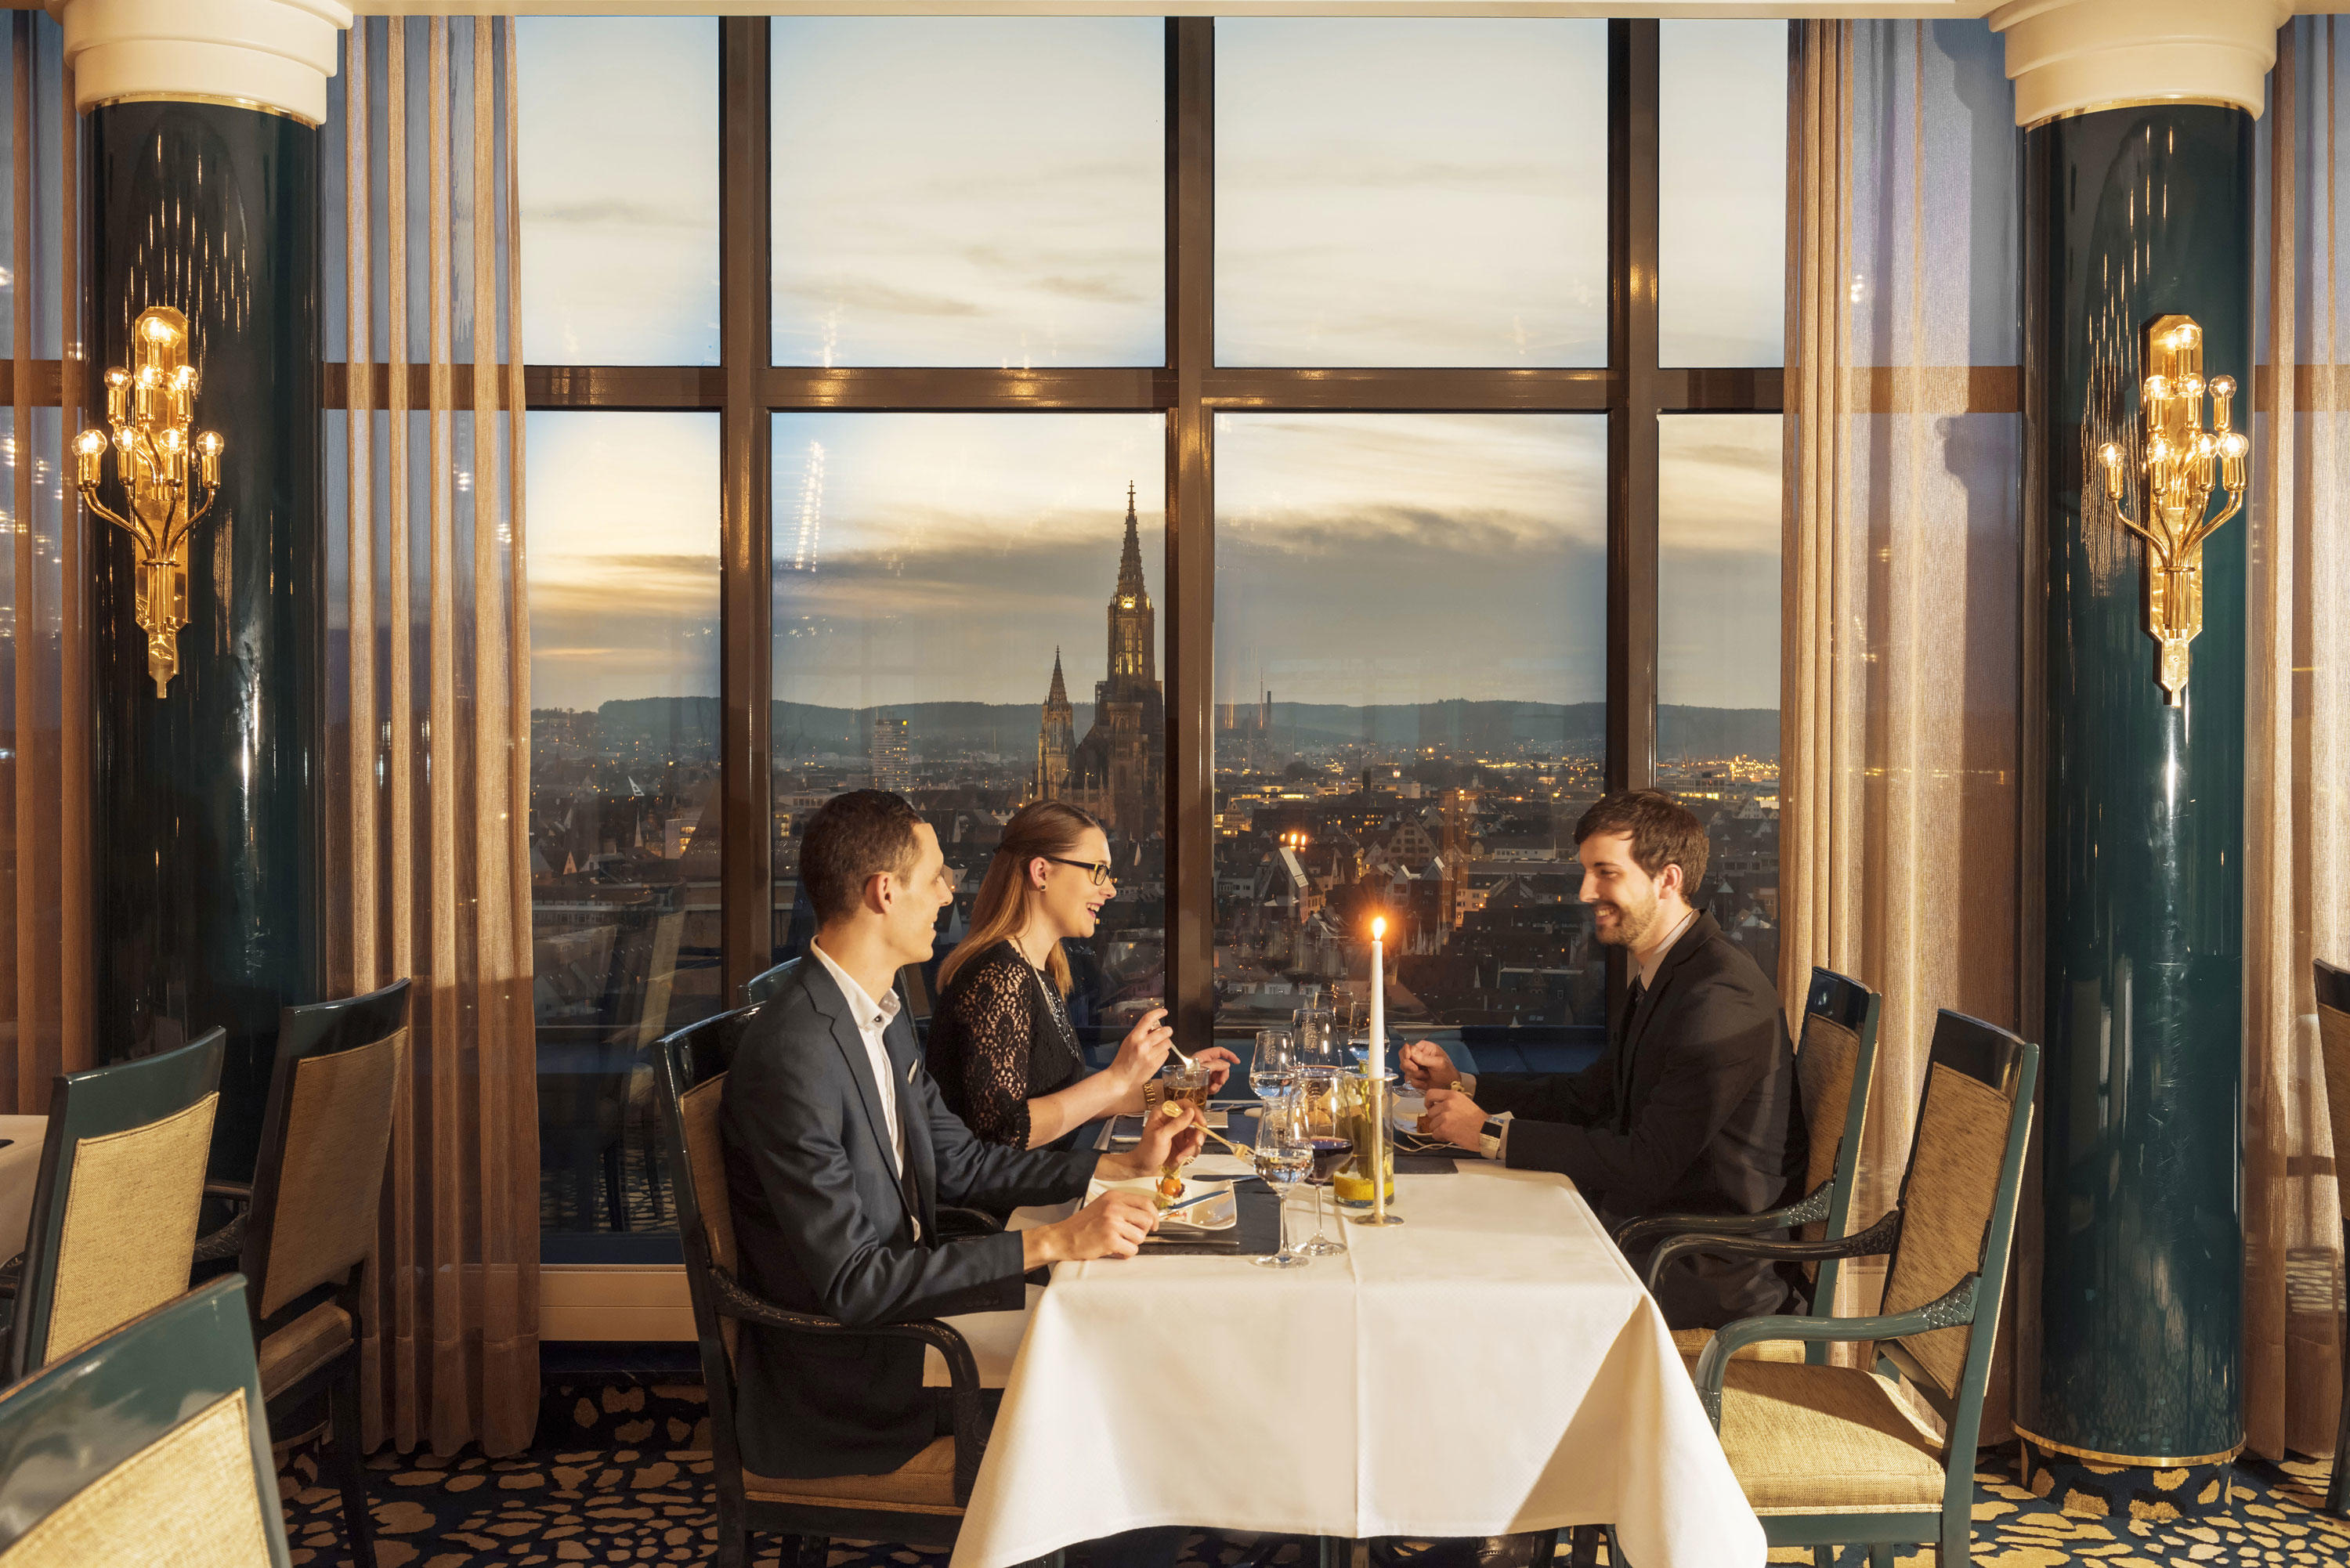 Restaurant "Panorama und Bastei" mit herrlichem Ausblick über Ulm